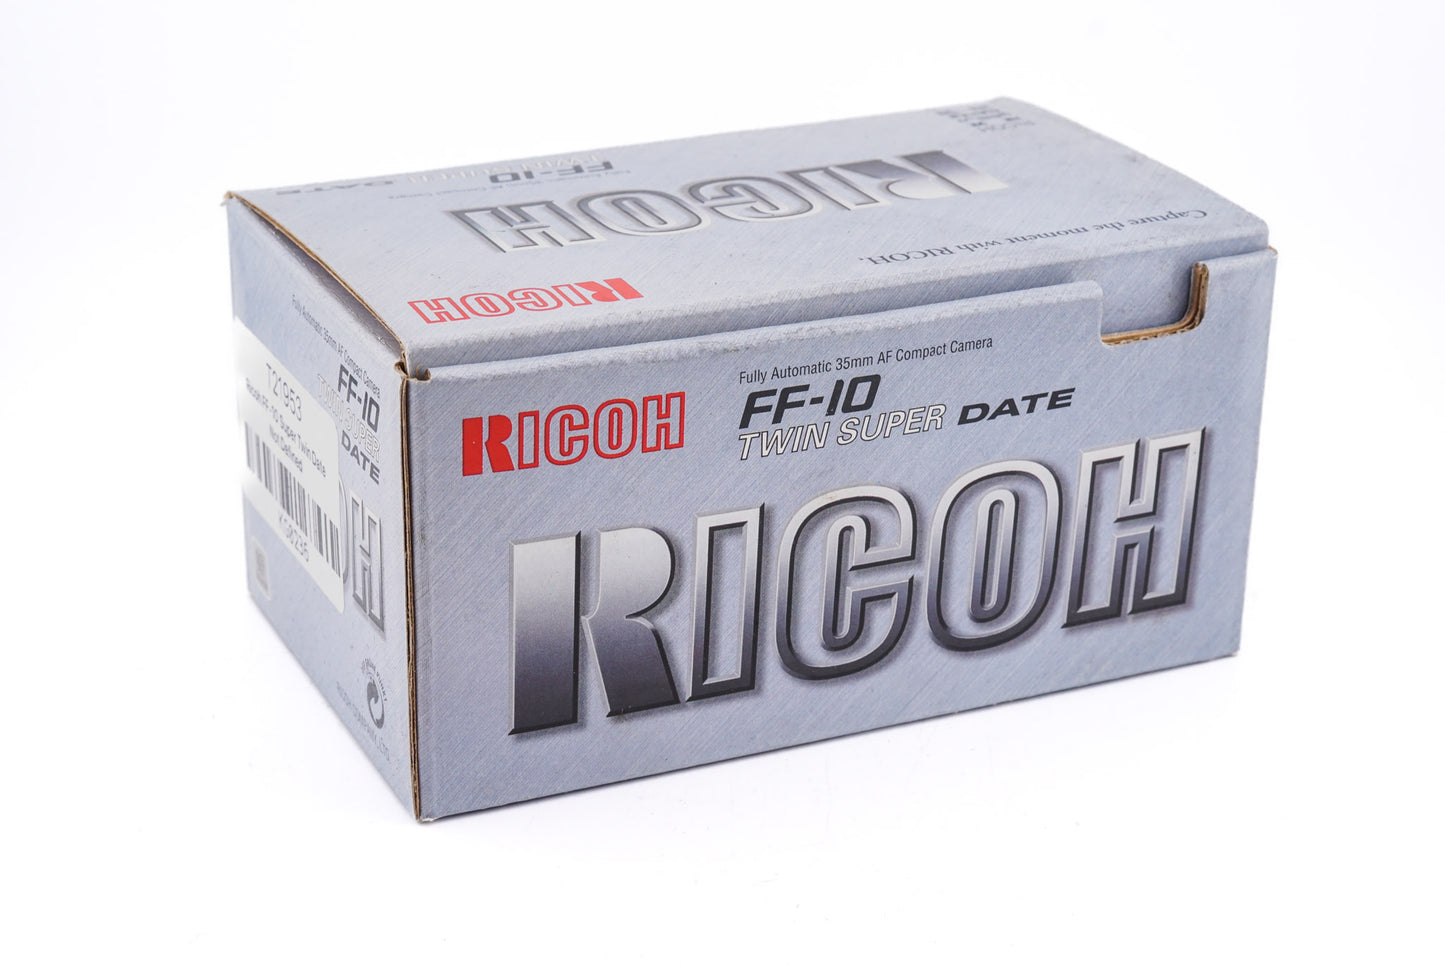 Ricoh FF-10 Super Twin Date